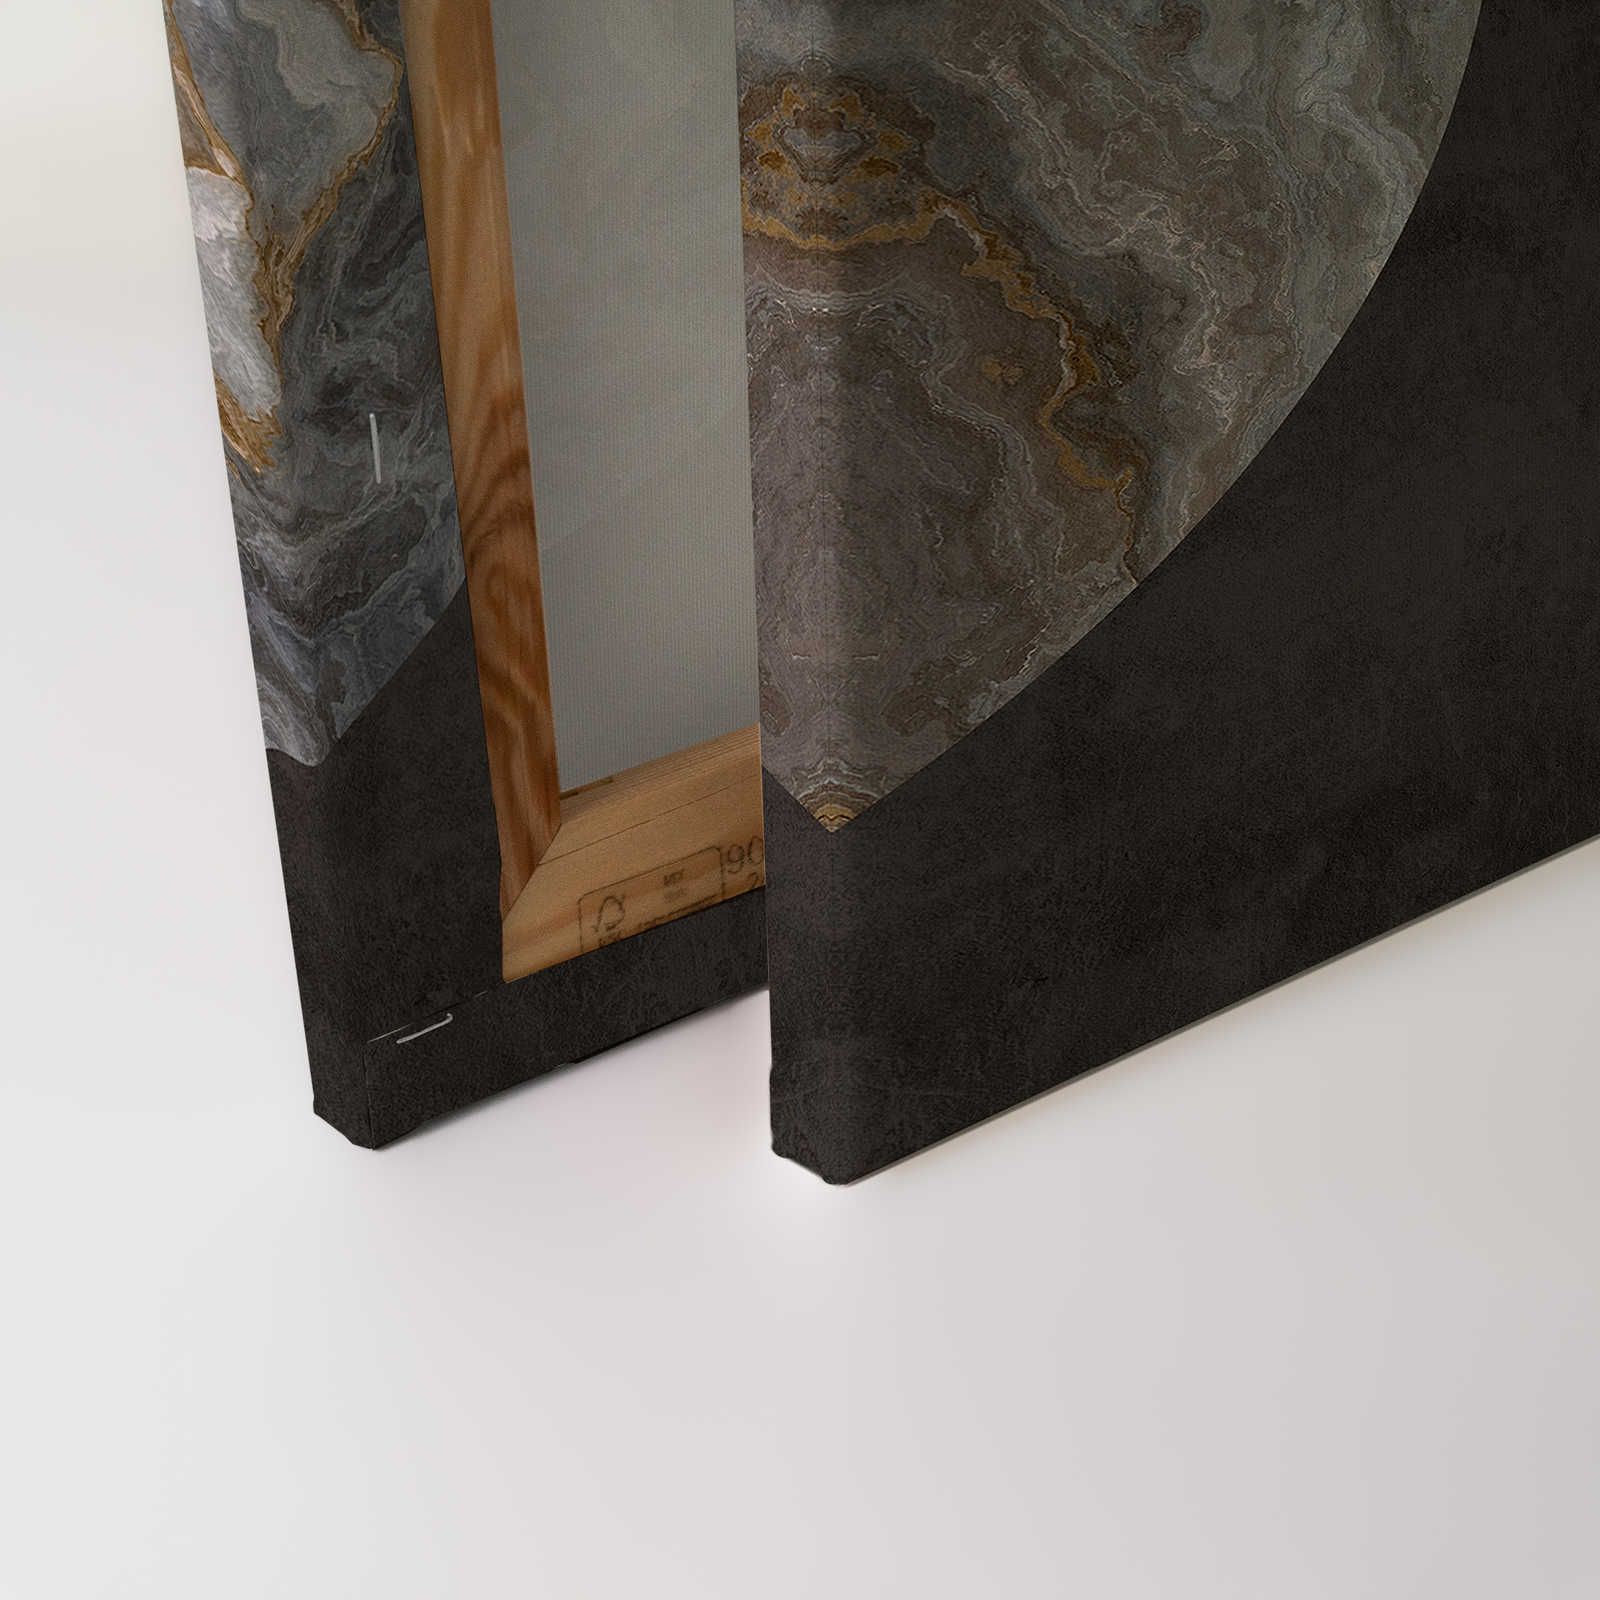             Luna 1 - Marbre toile cercle design & aspect plâtre noir - 0,90 m x 0,60 m
        